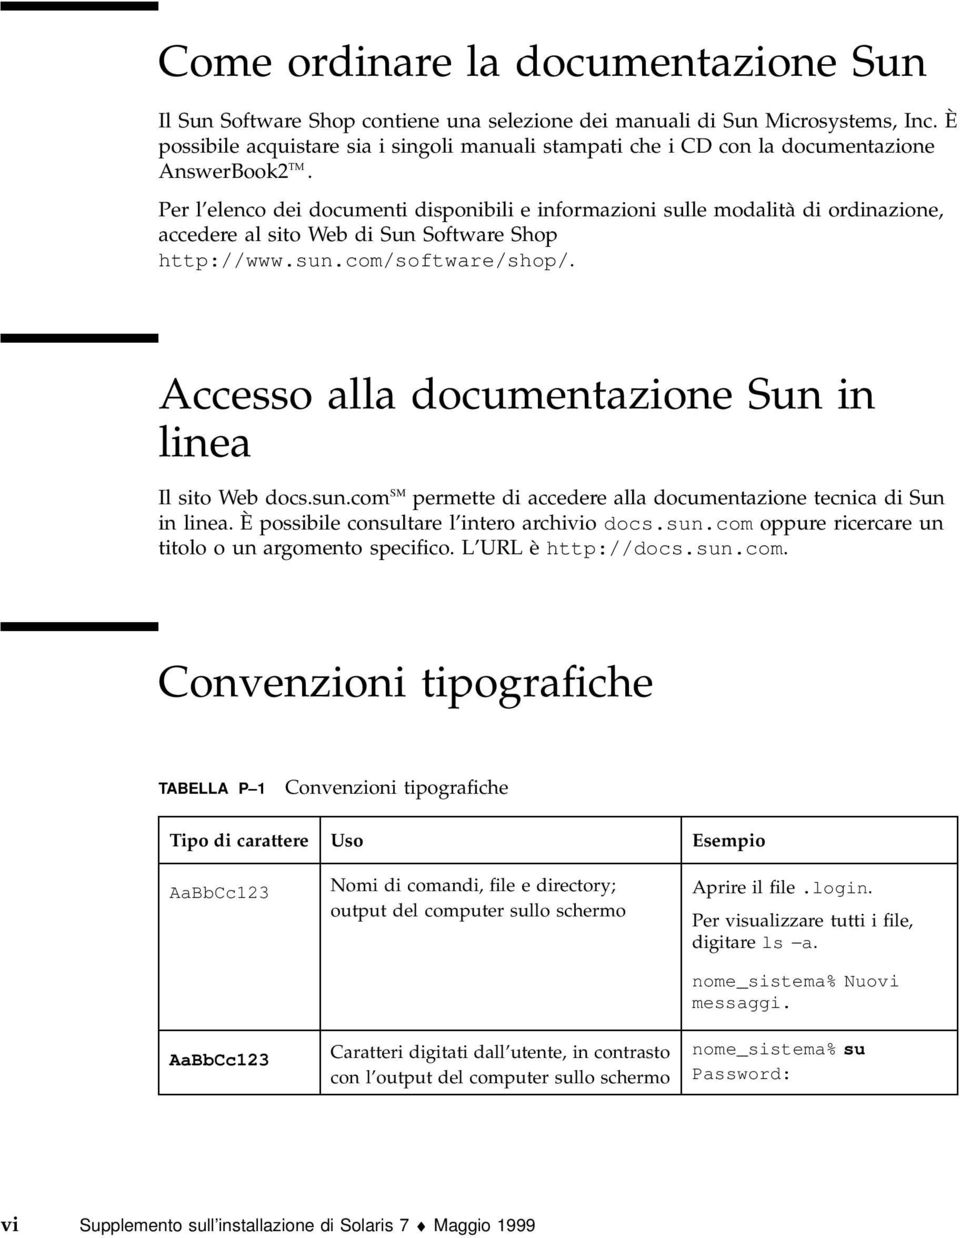 Per l elenco dei documenti disponibili e informazioni sulle modalità di ordinazione, accedere al sito Web di Sun Software Shop http://www.sun.com/software/shop/.